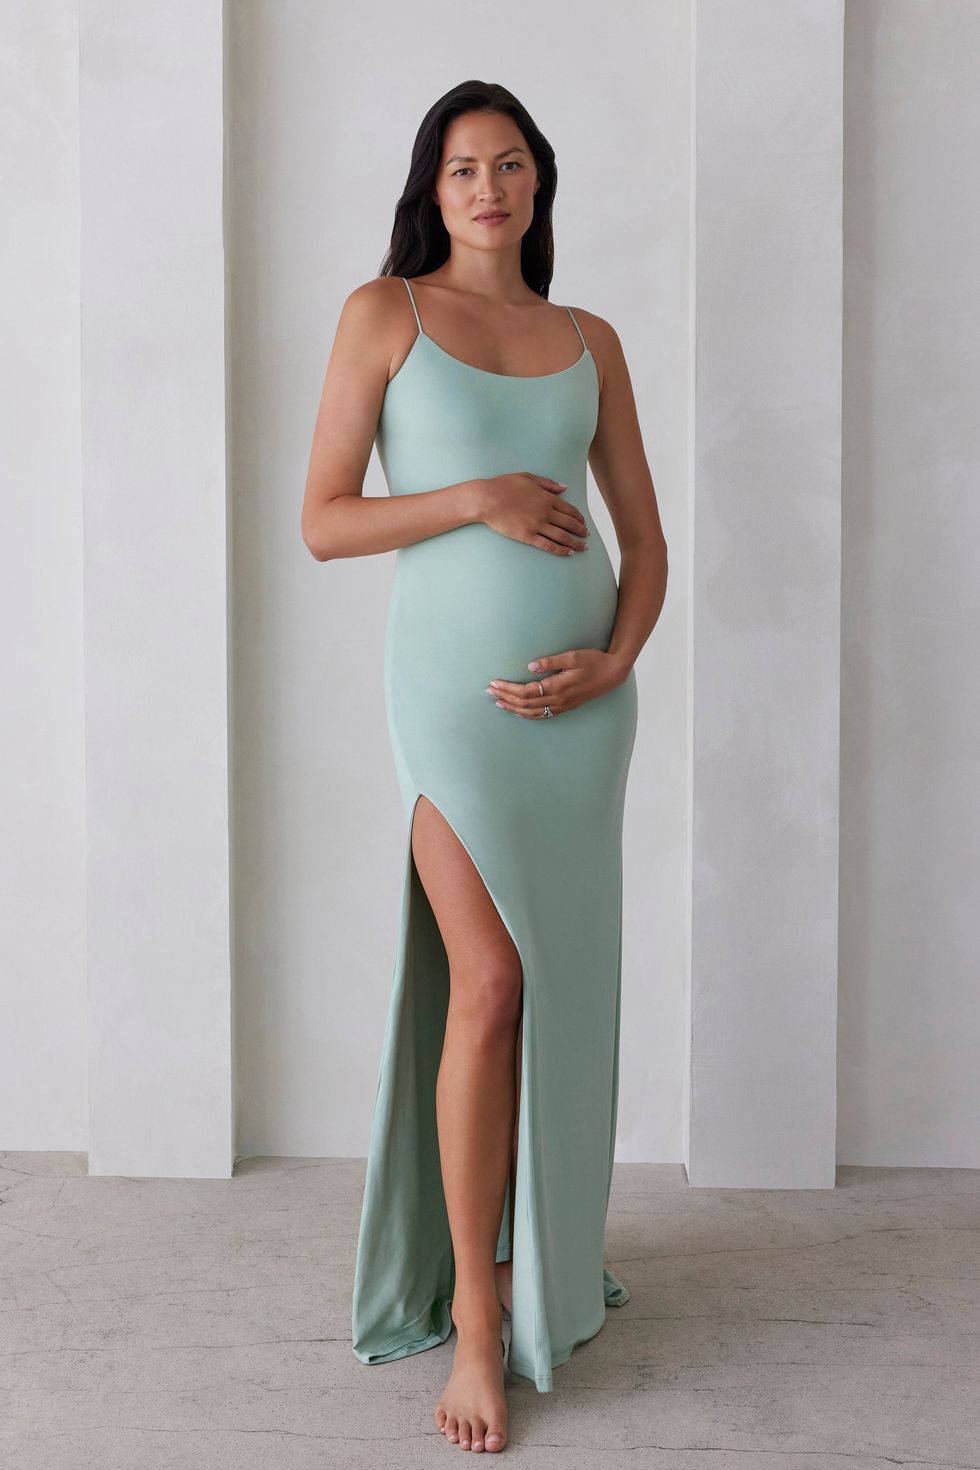 Floral Maternity Nursing Dress Pregnancy dress for women zipper gown  evening Top